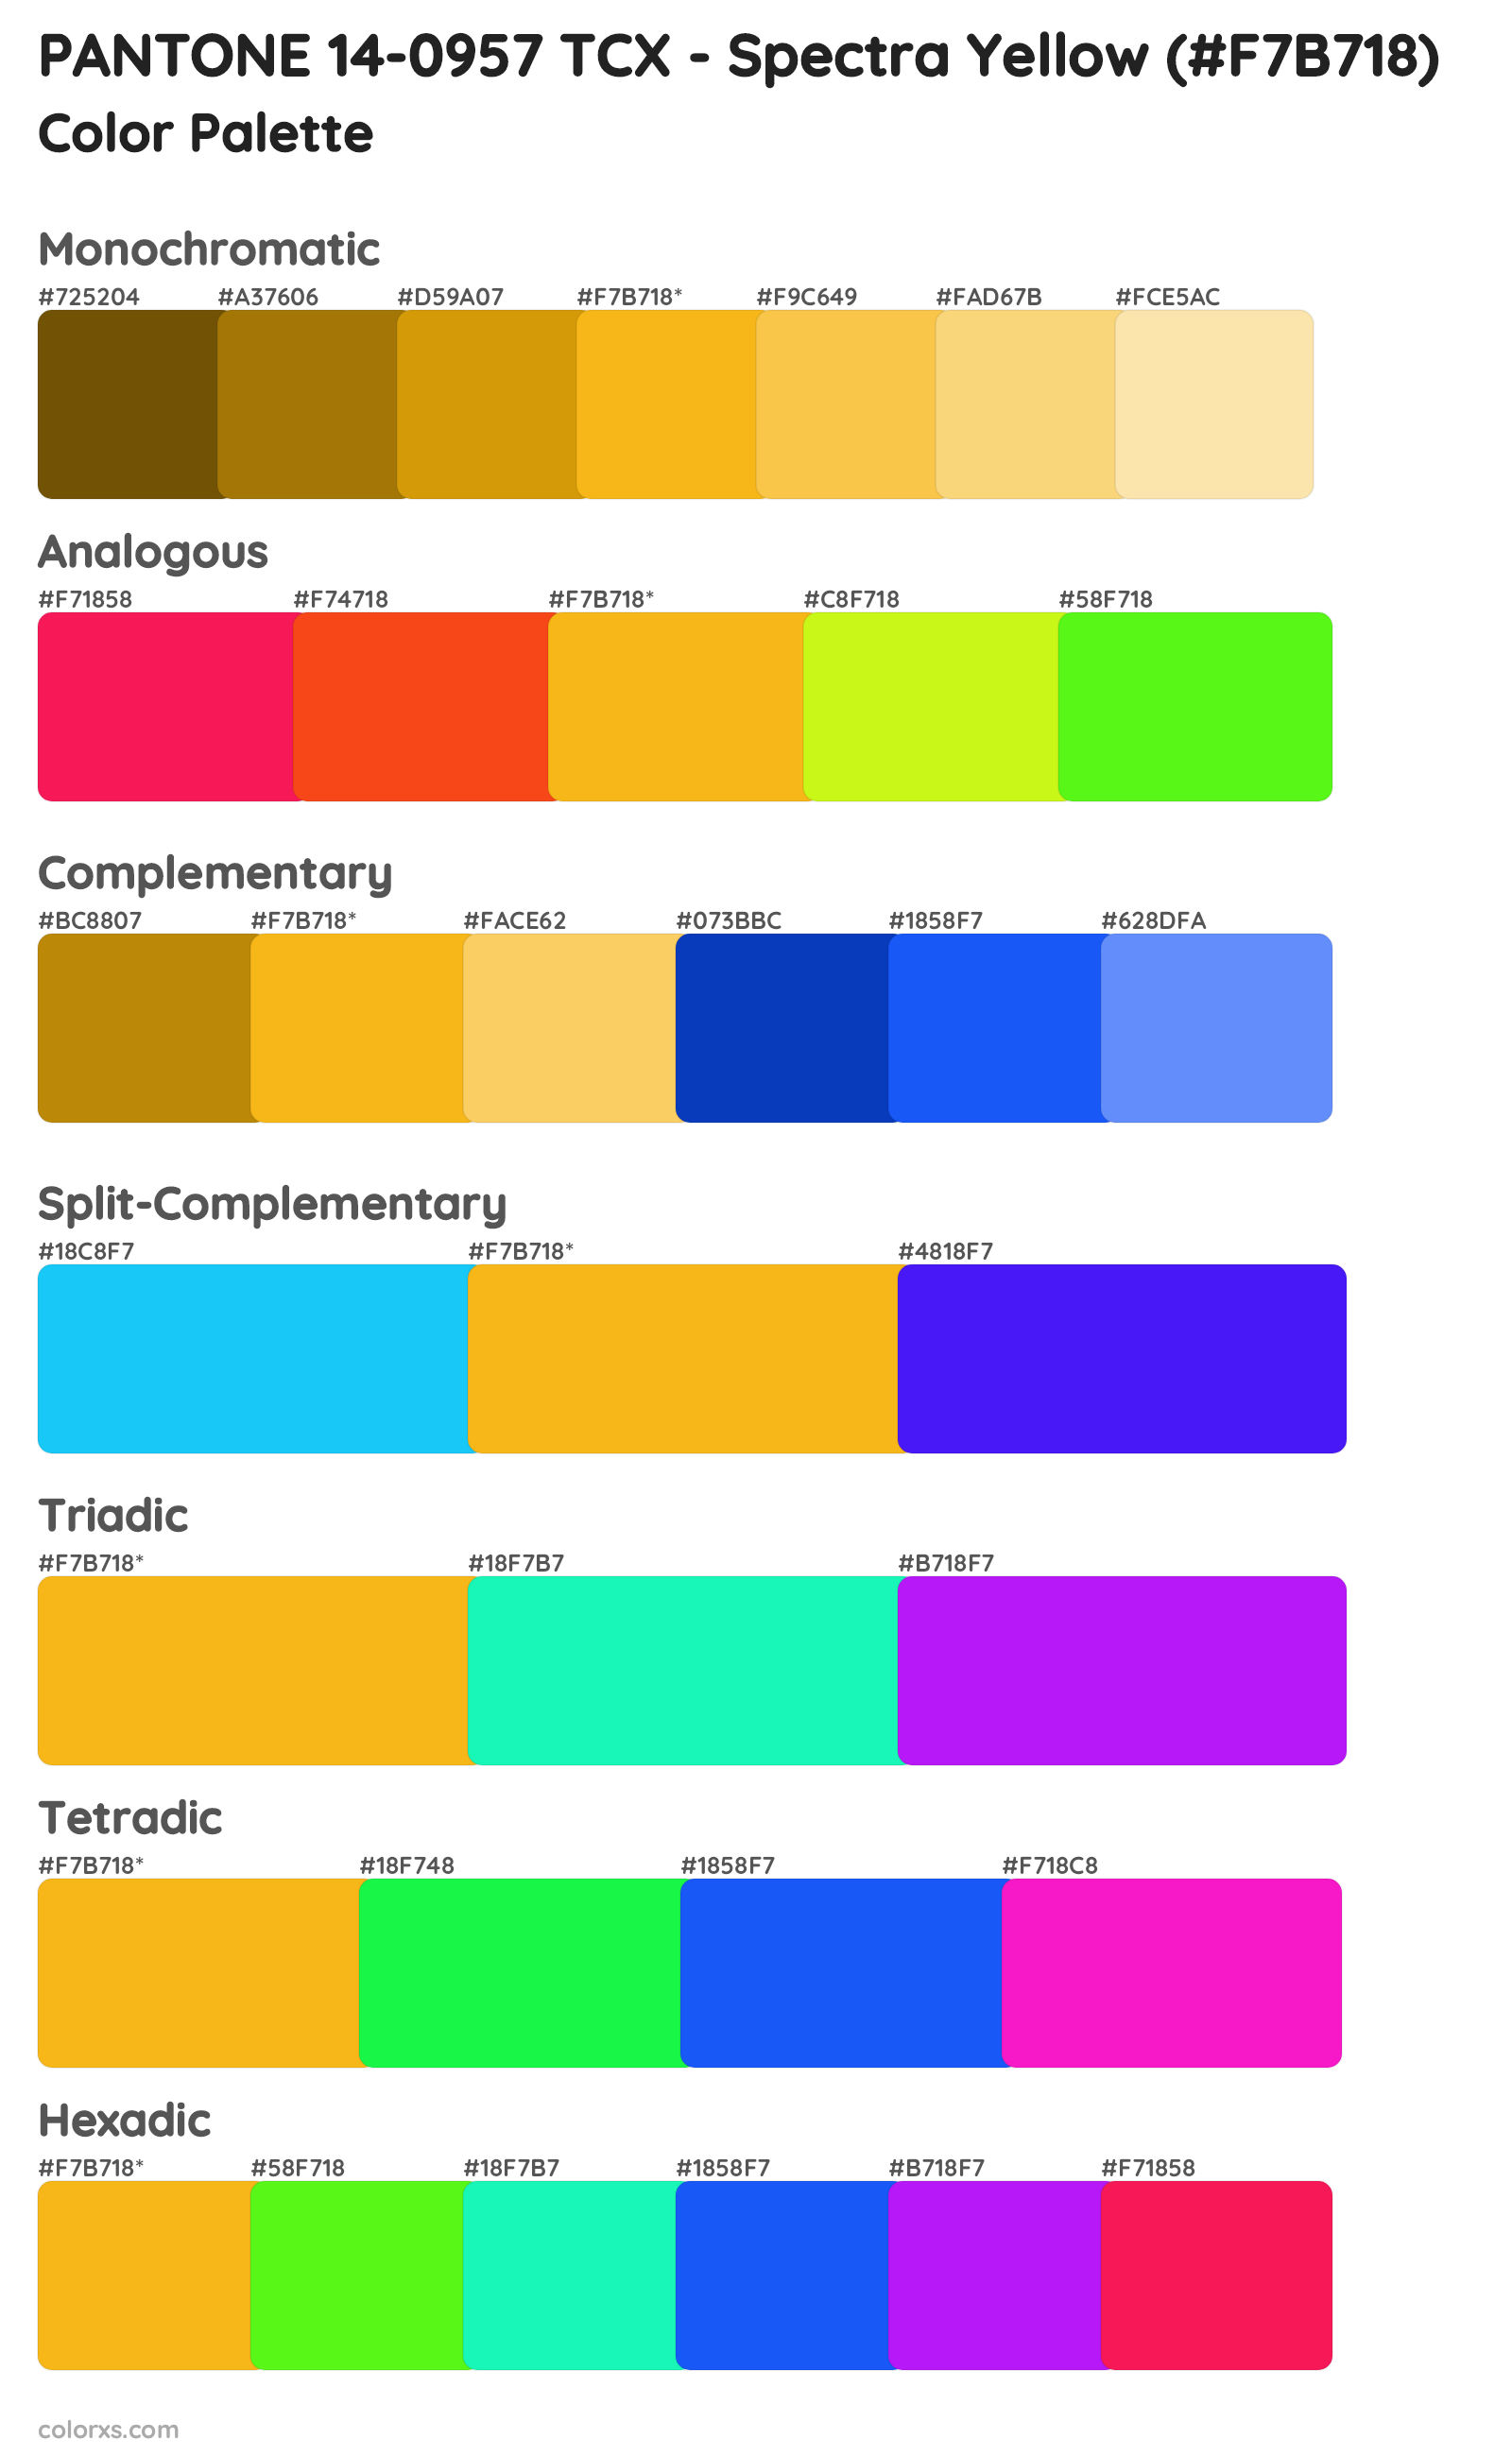 PANTONE 14-0957 TCX - Spectra Yellow Color Scheme Palettes